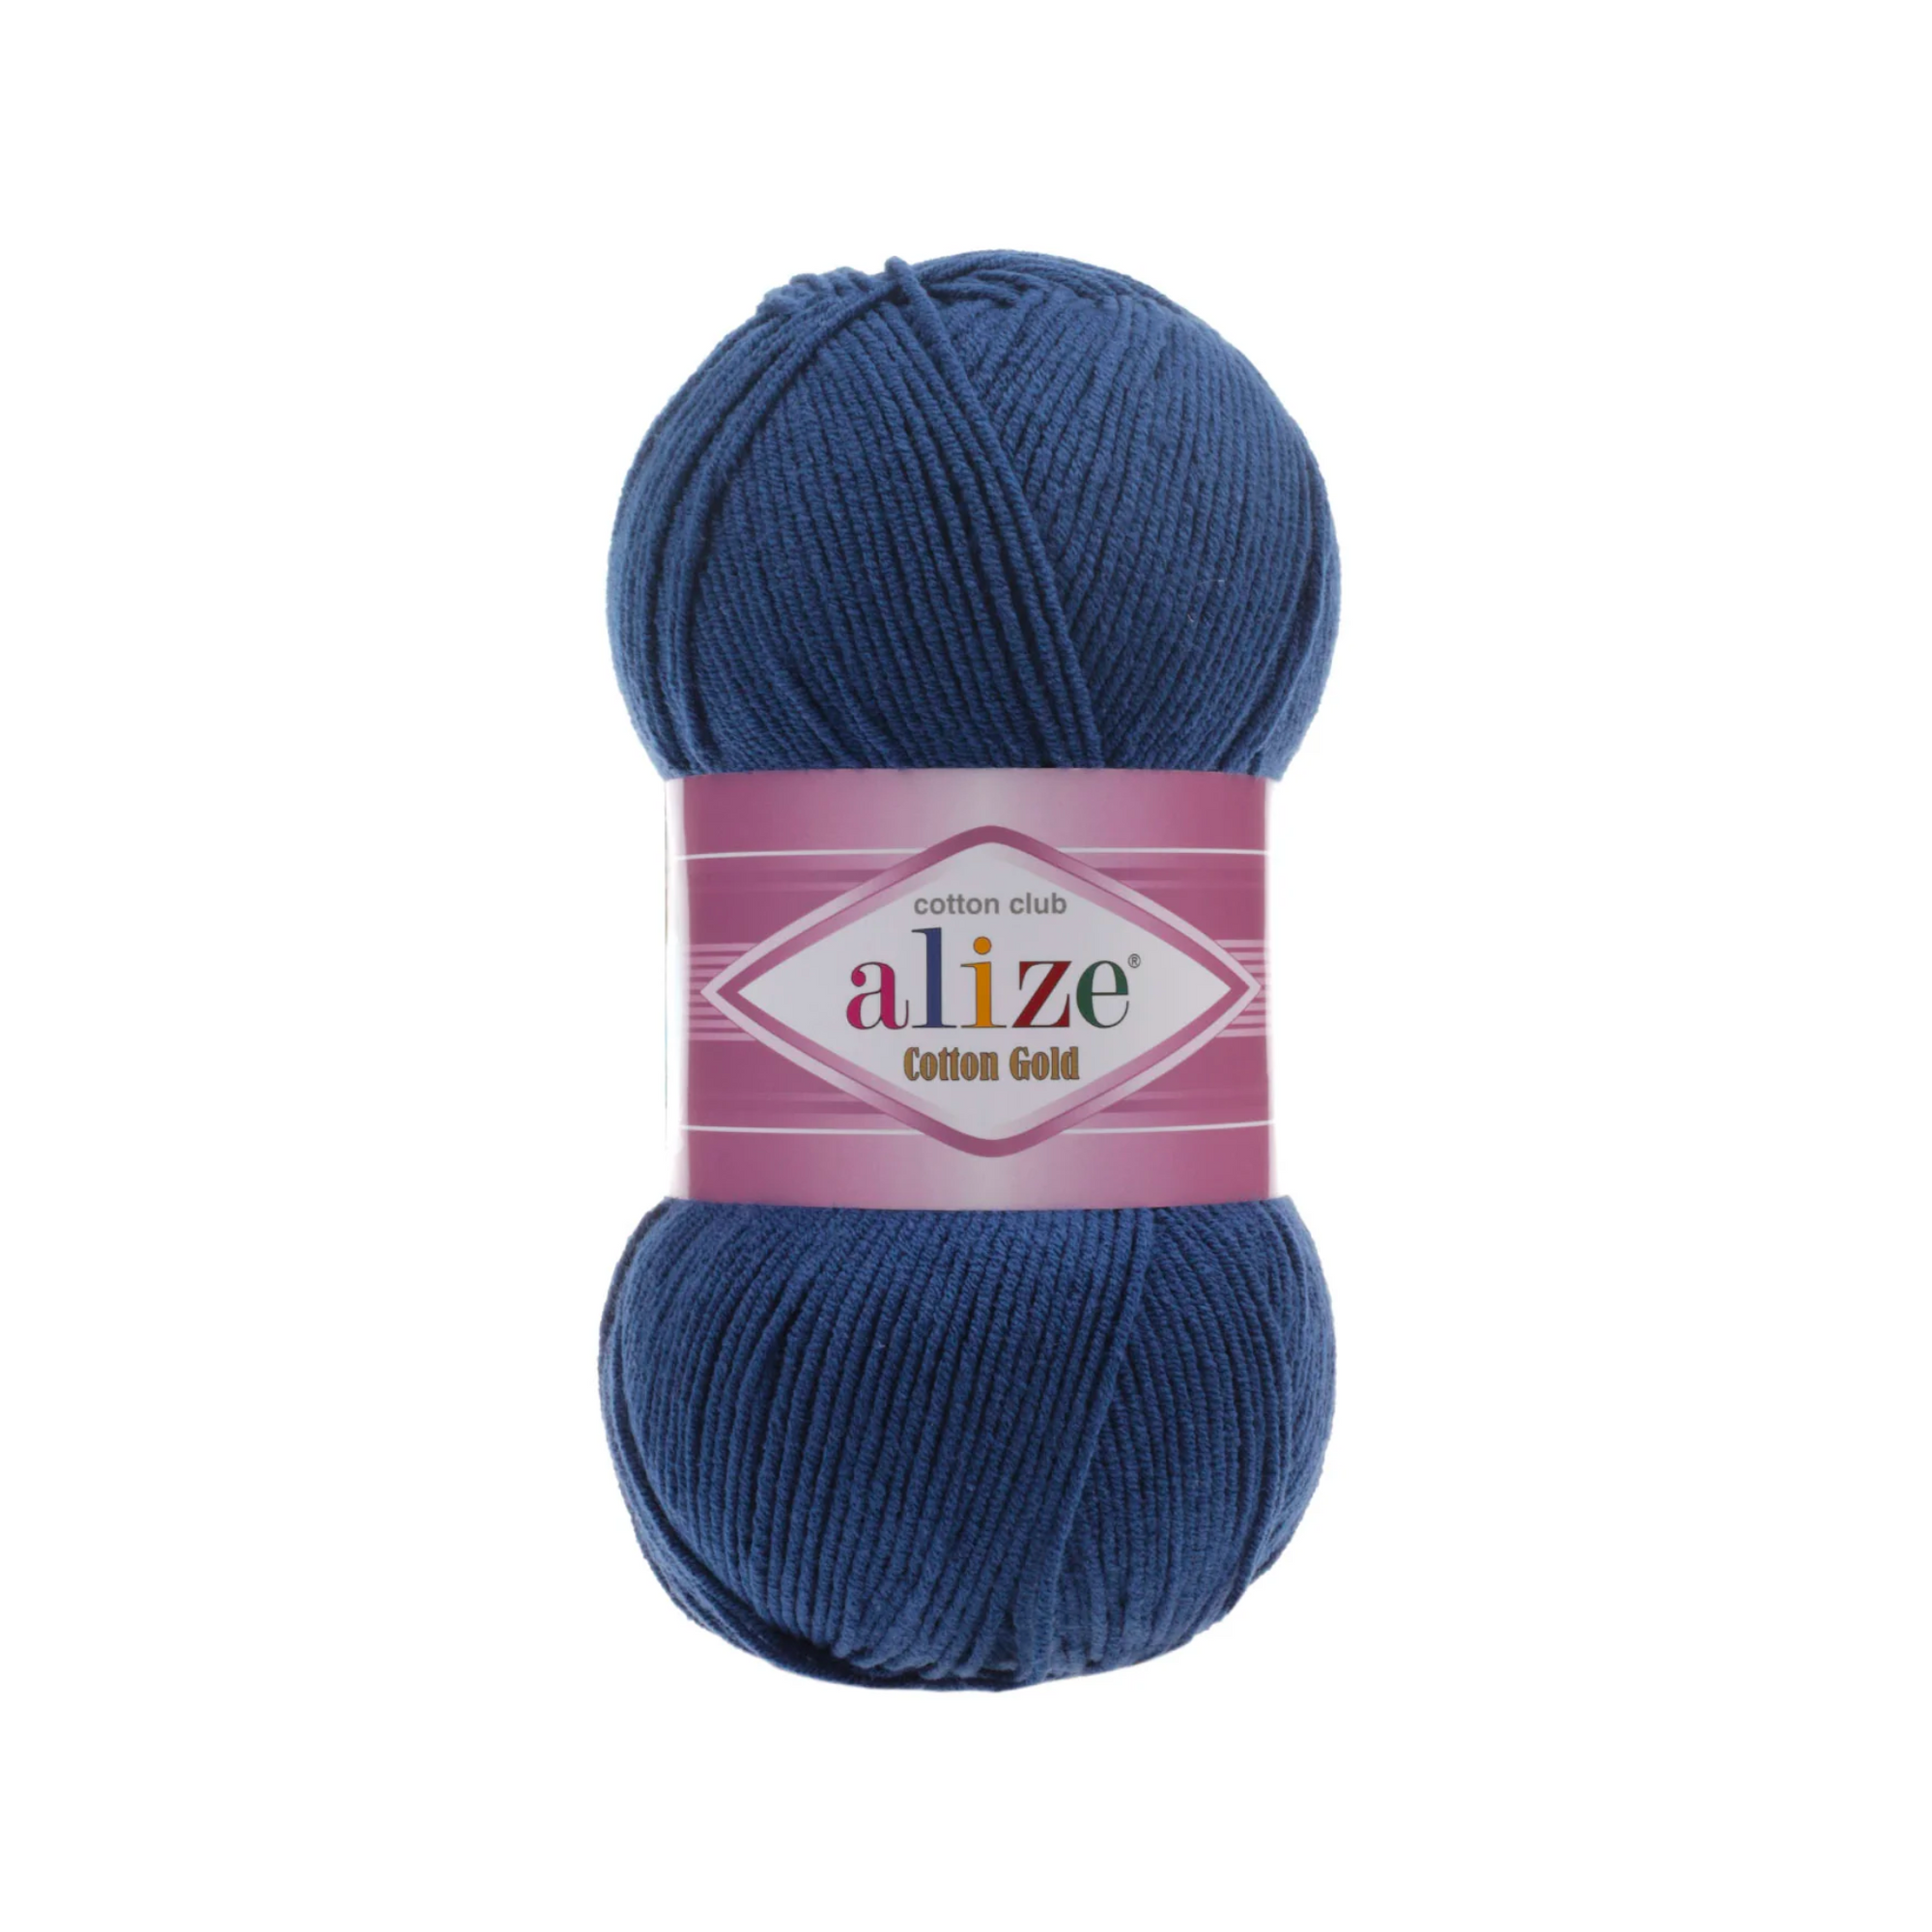 Alize Cotton Gold Knitting Yarn, Mustard Yellow - 02